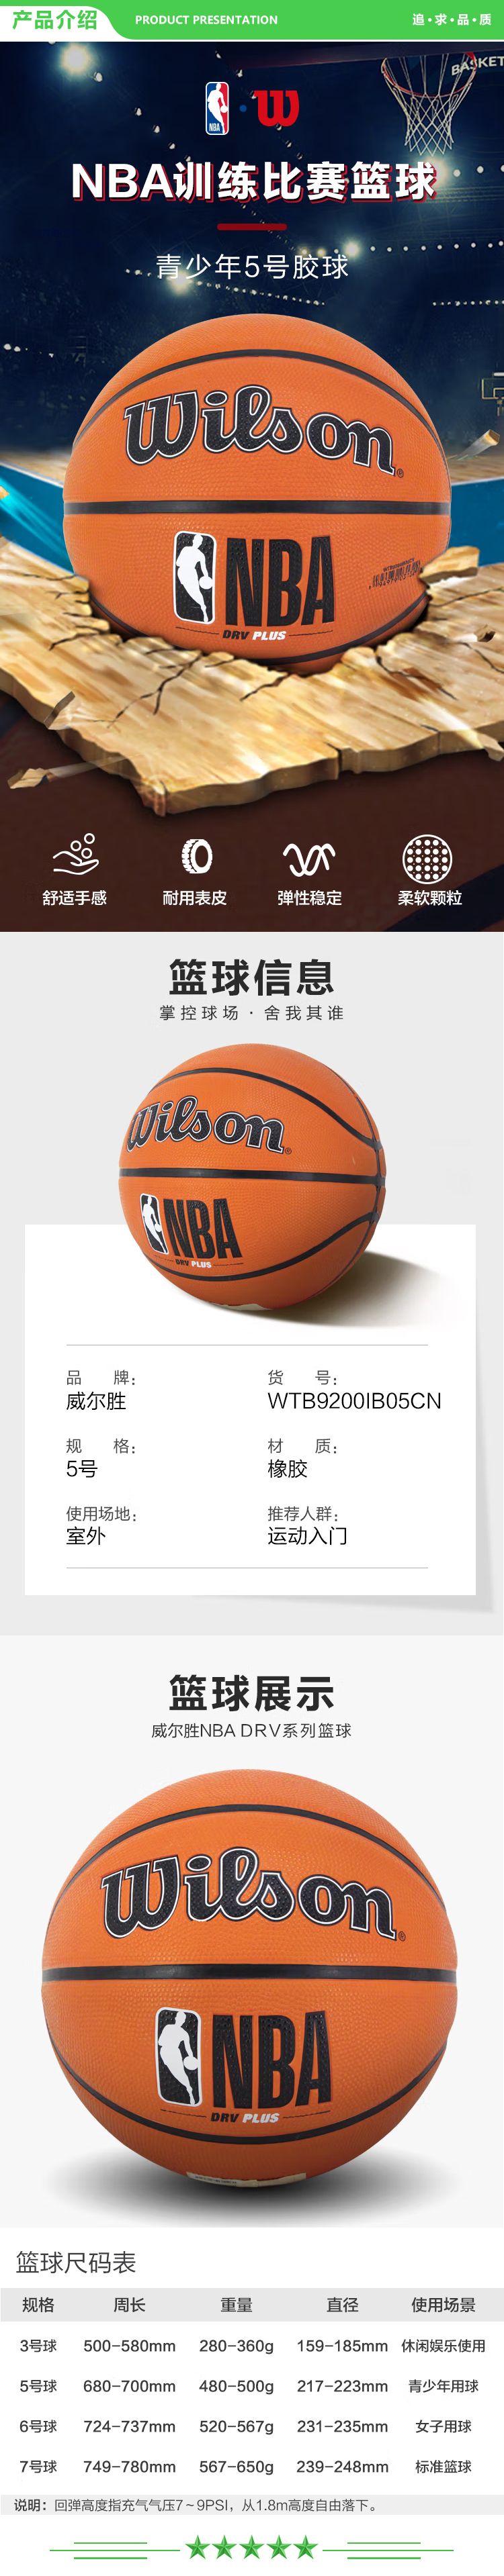 威尔胜 Wilson WTB9200IB05CN 5号NBA篮球训练比赛用球中小学生青少年室外通用耐磨橡胶篮球  .jpg